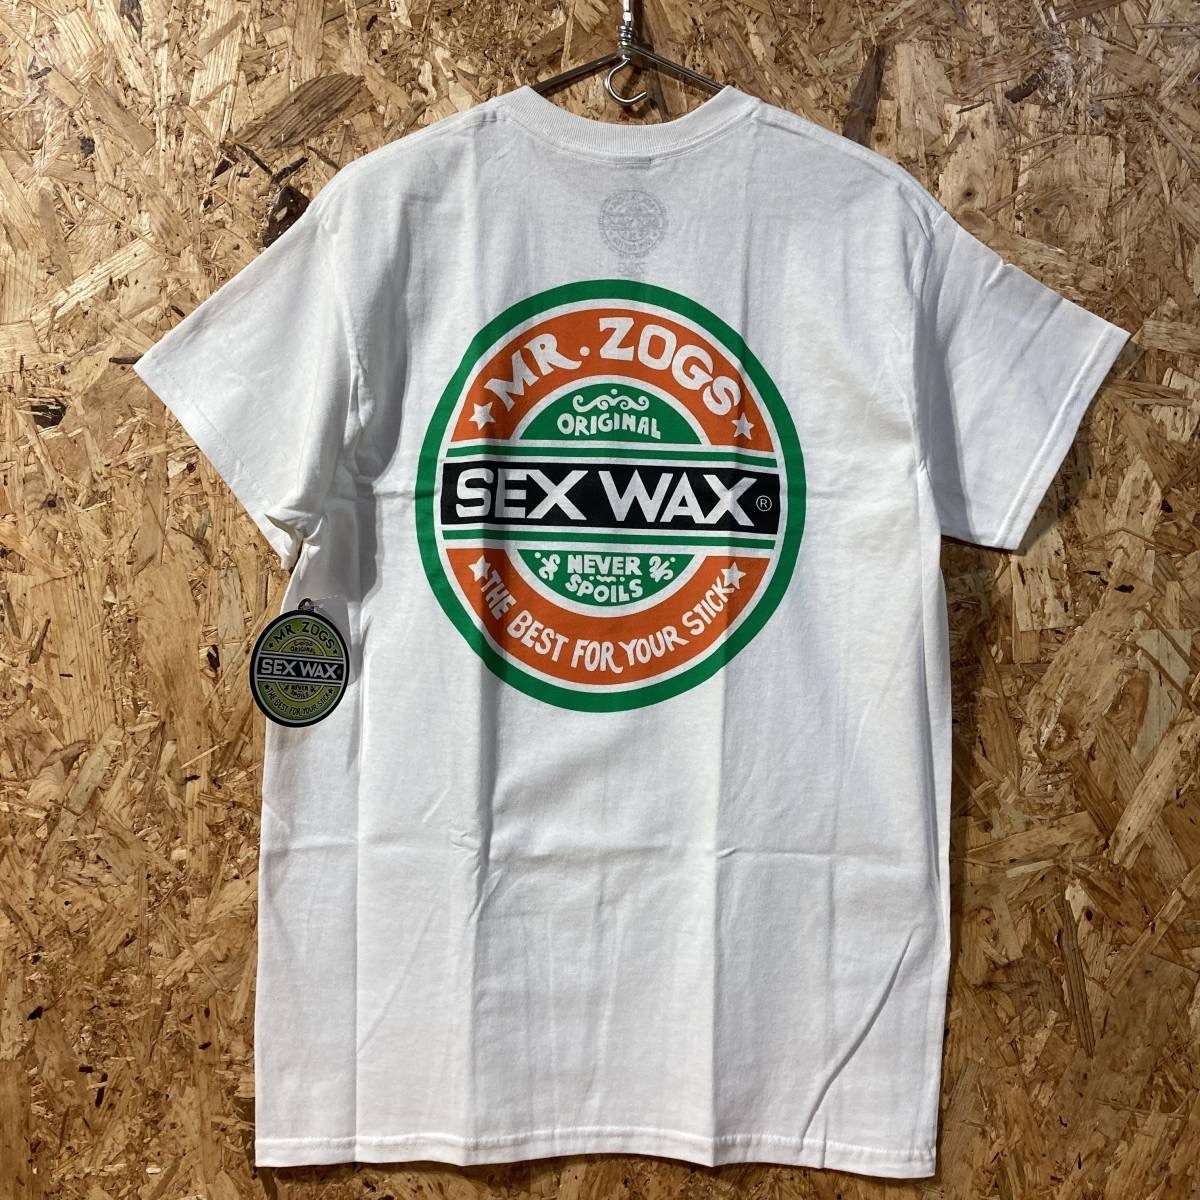 SEXWAX ムラサキスポーツ 半袖 Tシャツ M コラボ 別注 限定 セックスワックス ステッカー付き_画像1